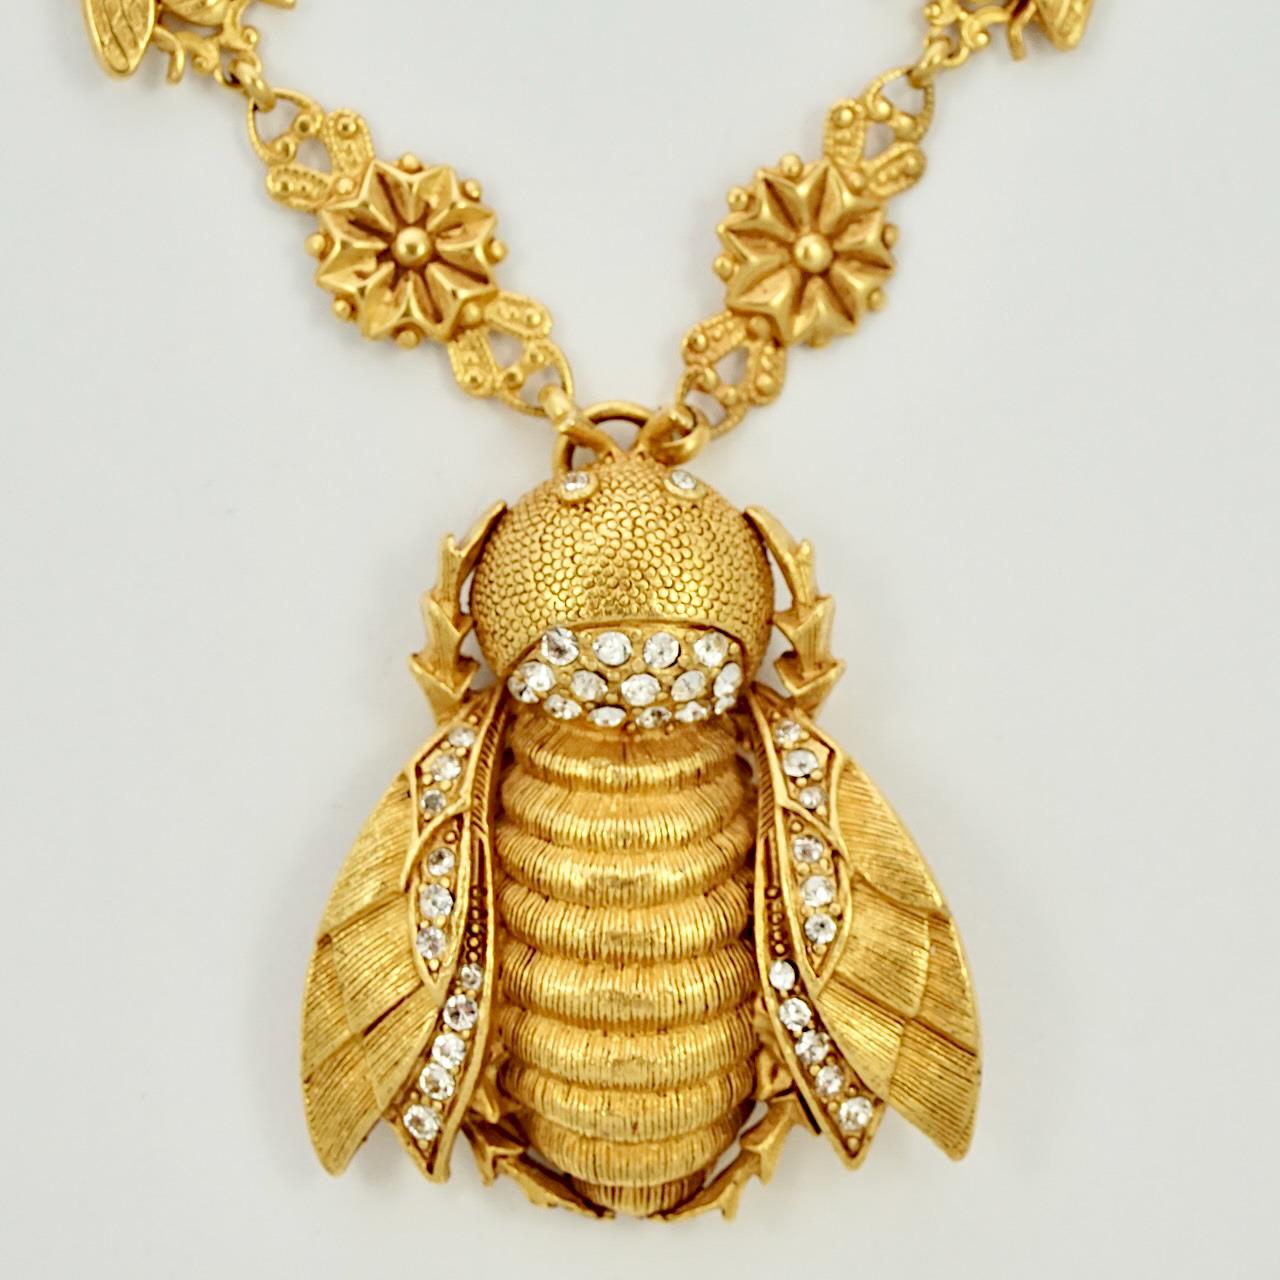 Fabelhafte, vergoldete Halskette von Askew London mit einem schönen, großen, strukturierten Bienenanhänger mit Kristallen. Die Biene ist an einer schönen Messingkette mit Fliegen- und Blumengliederkette befestigt. Messung Halskette Länge 42,5 cm /